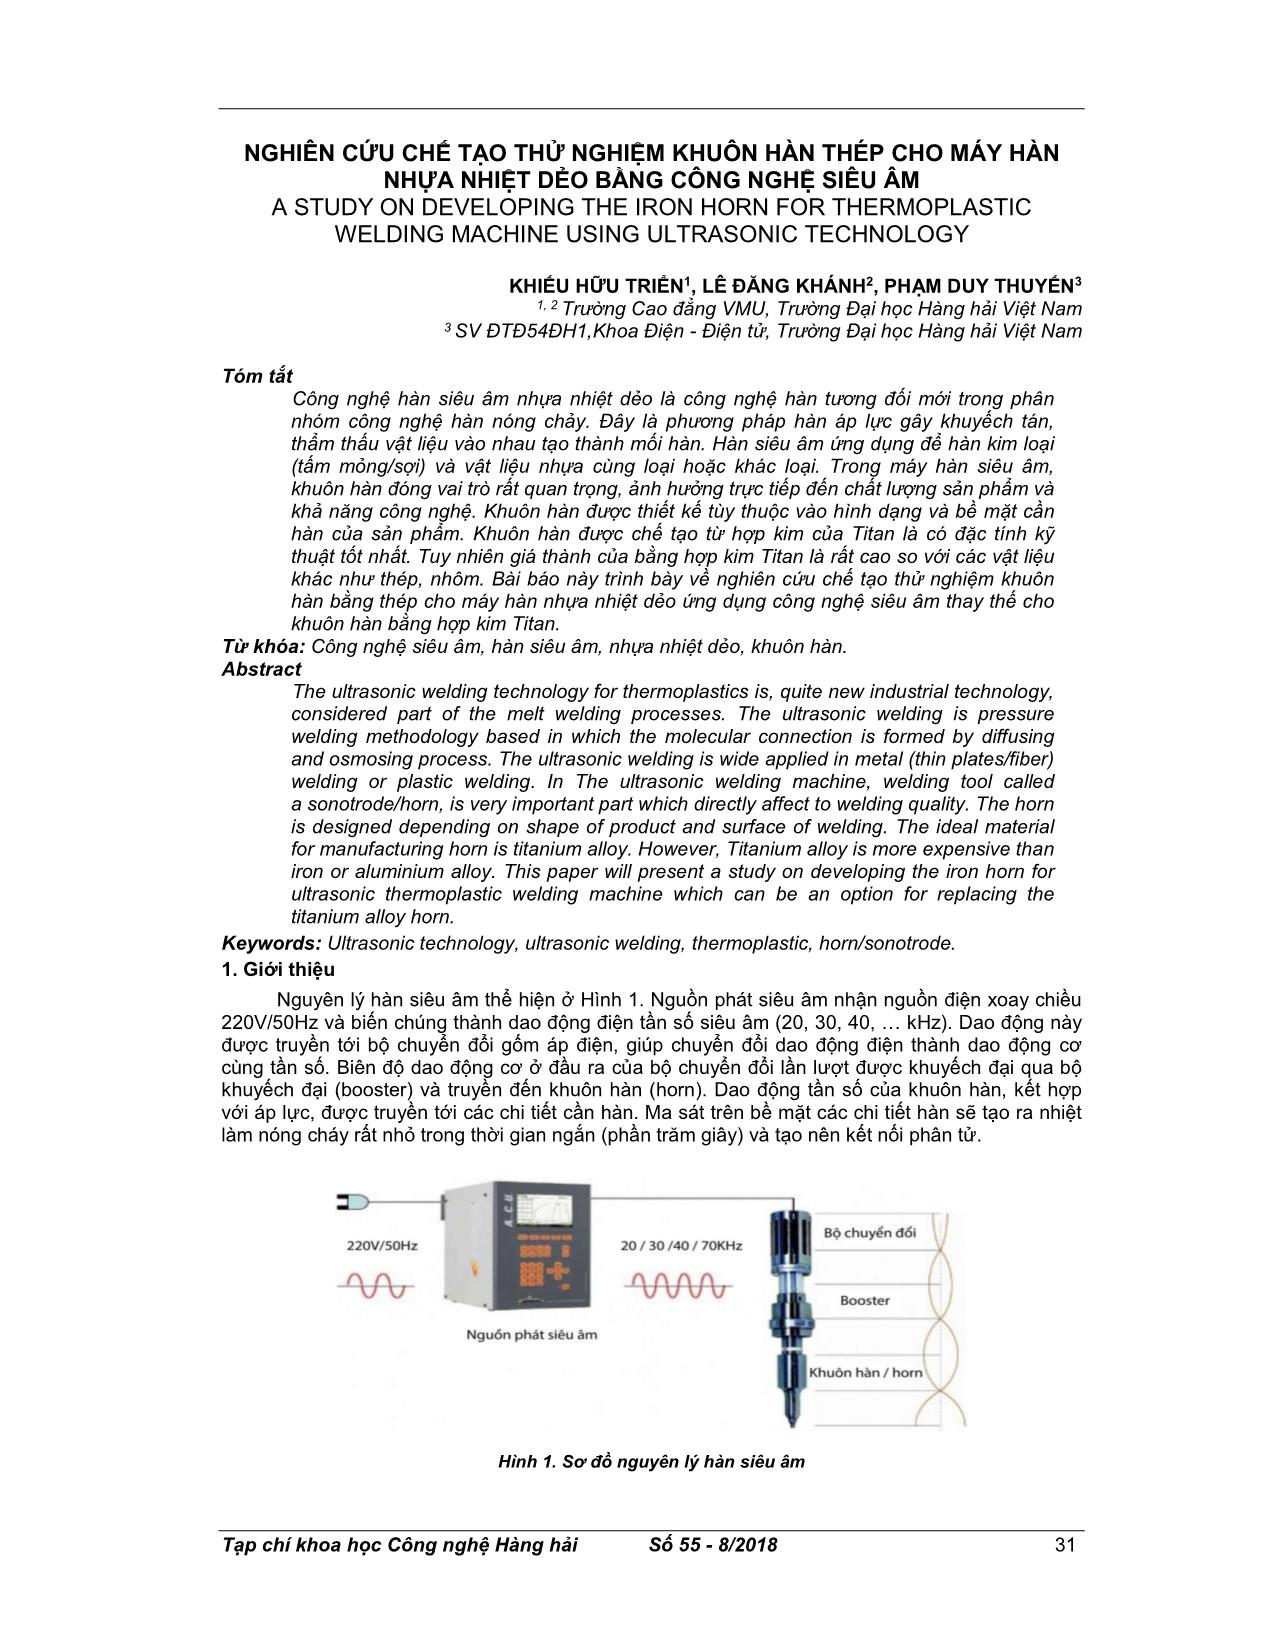 Nghiên cứu chế tạo thử nghiệm khuôn hàn thép cho máy hàn nhựa nhiệt dẻo bằng công nghệ siêu âm trang 1